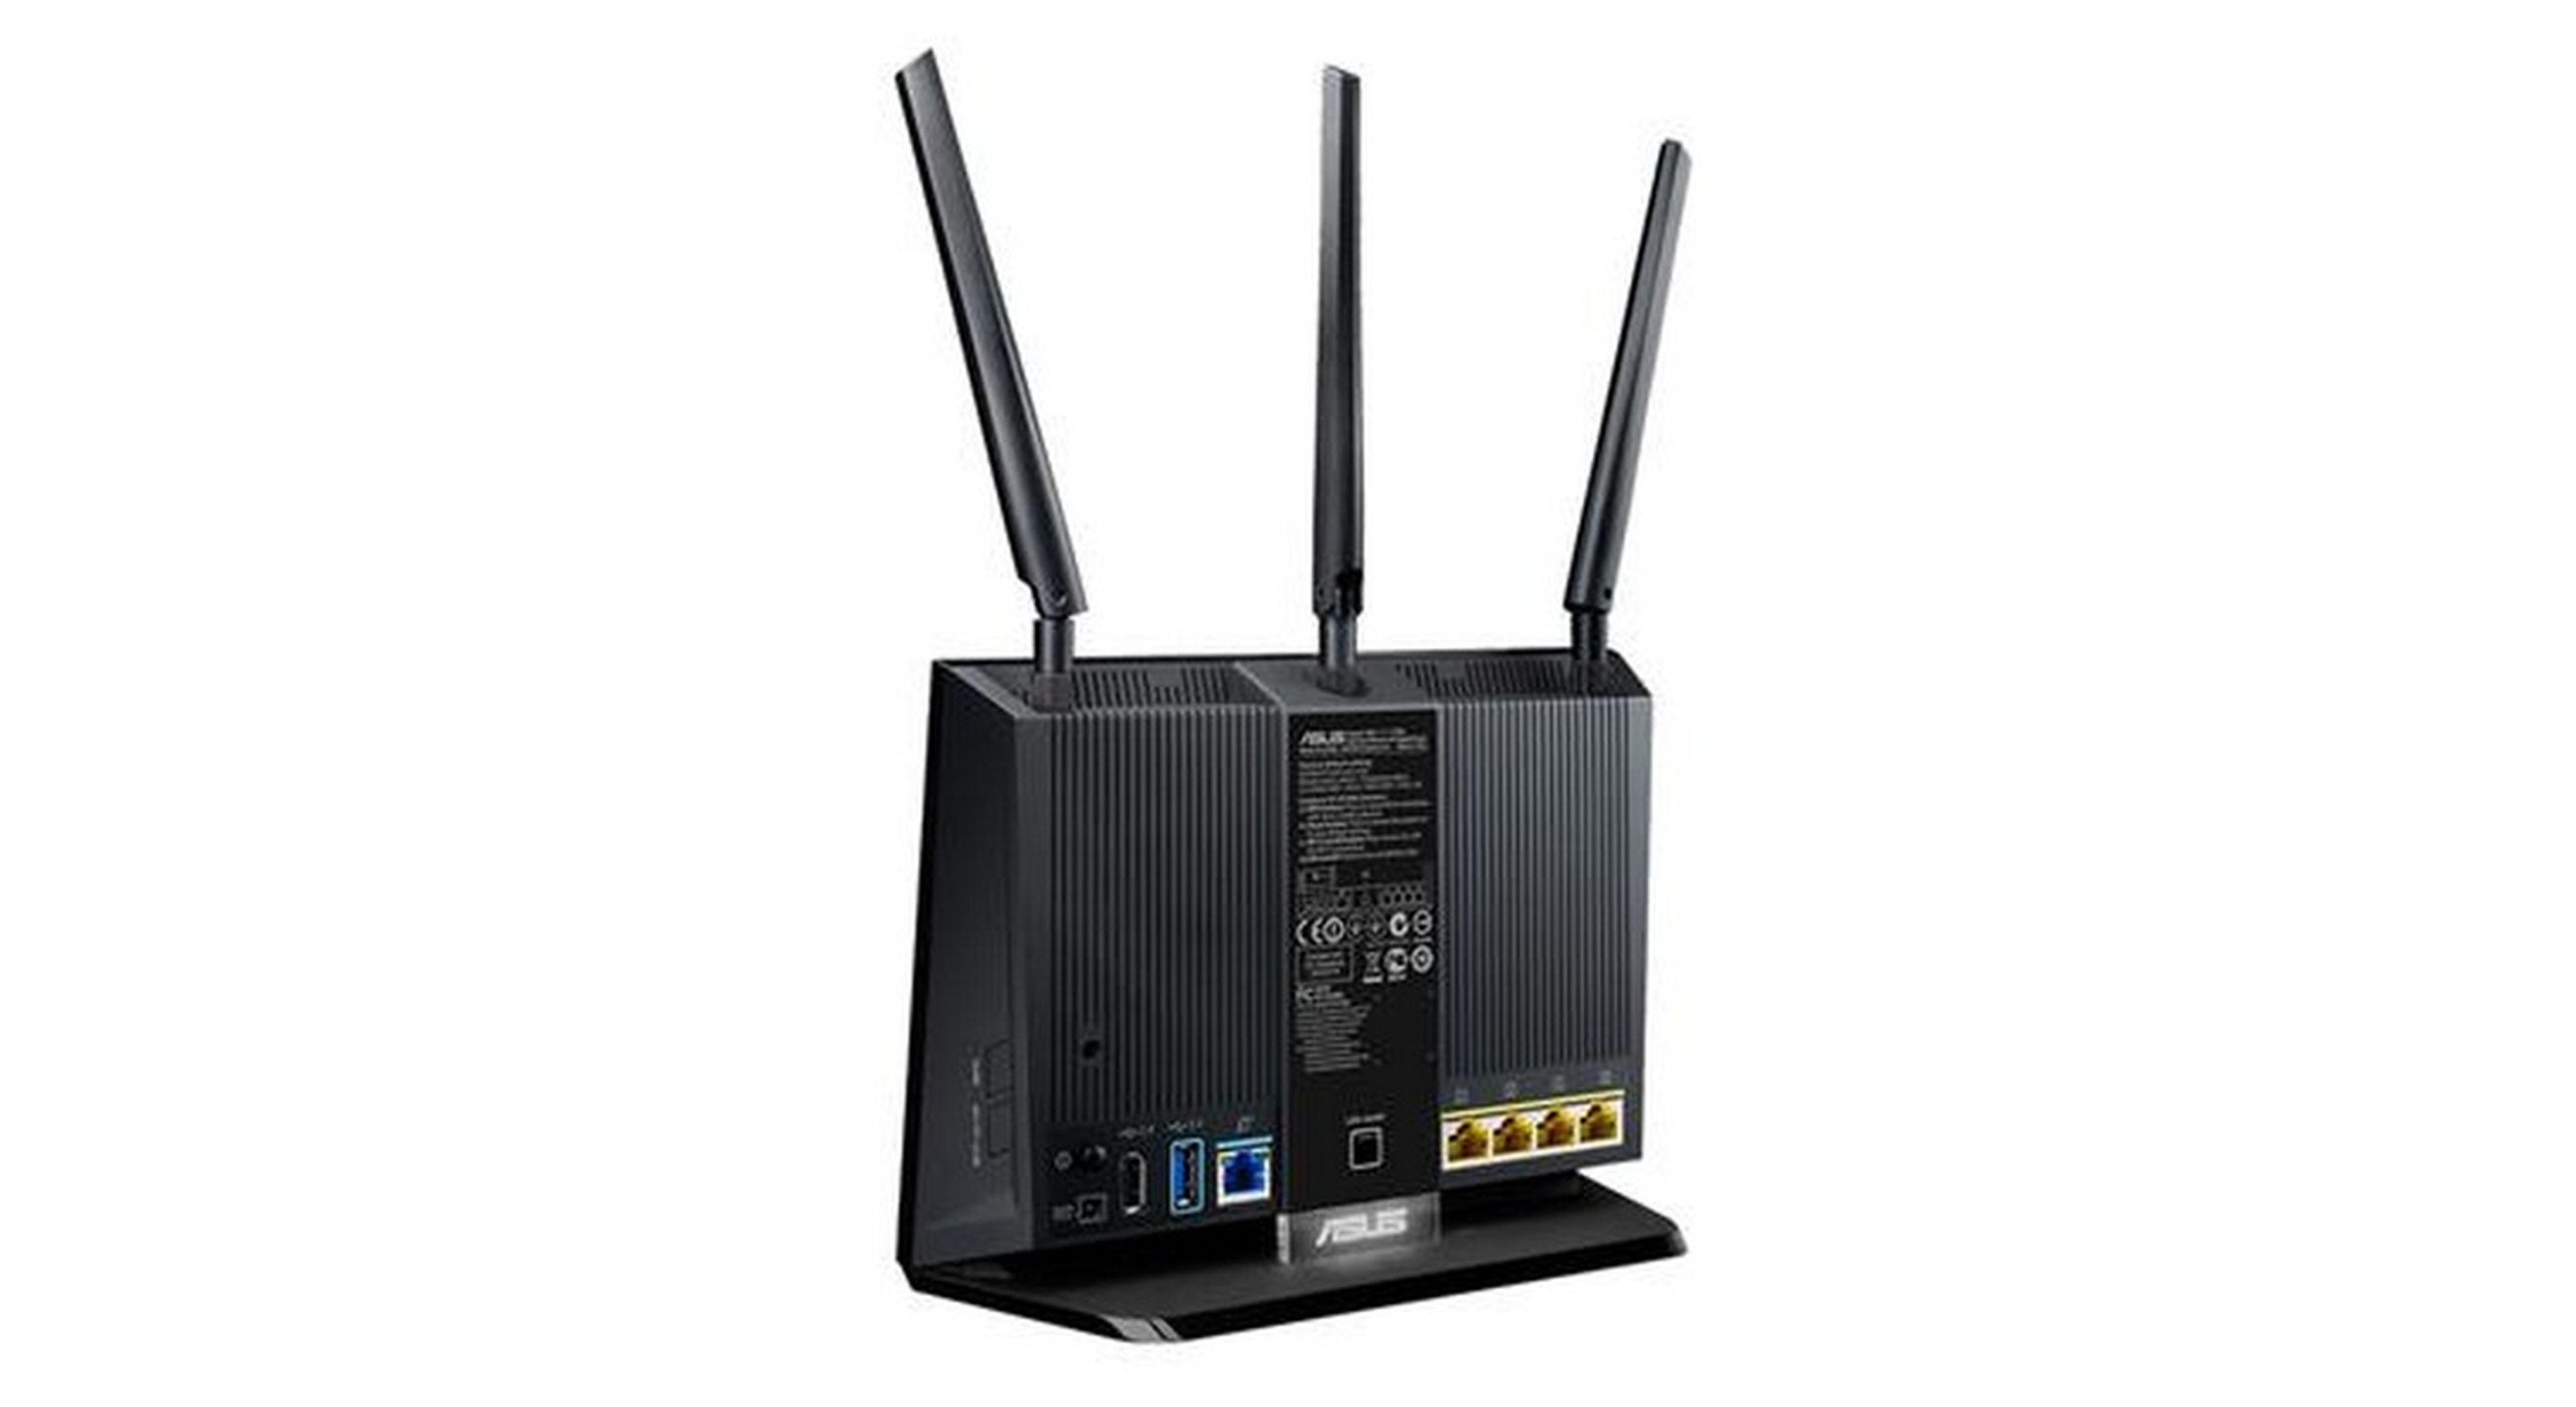 ASUS RT-AC68U, ¿merece la pena este router con WiFi AC por menos de 150 euros?